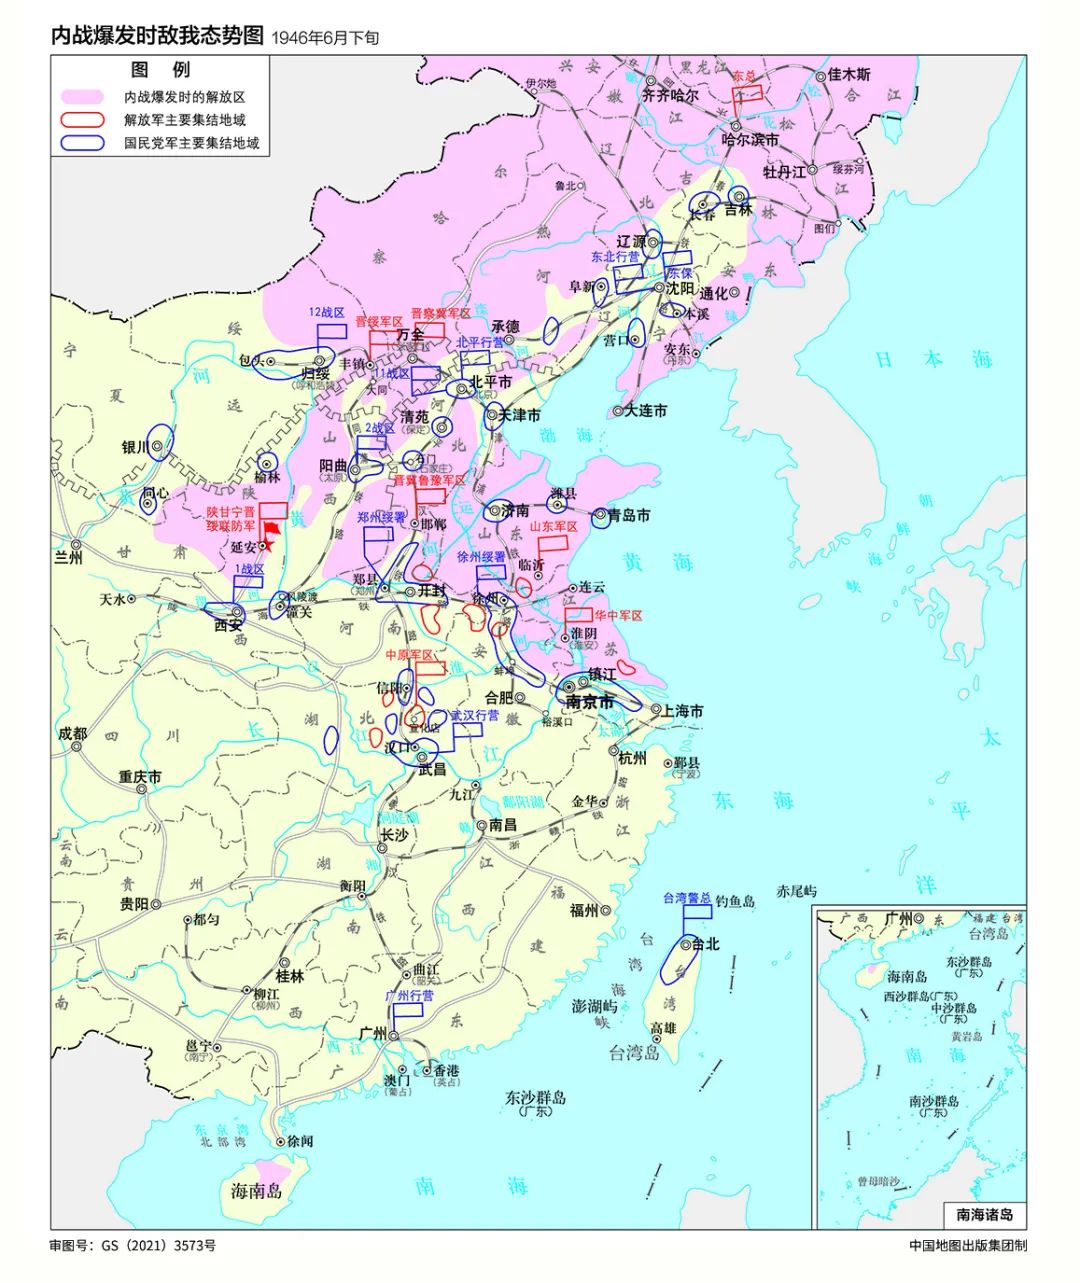 审图号:gs(2021)3573 解放战争爆发时双方态势图 中国地图出版集团供